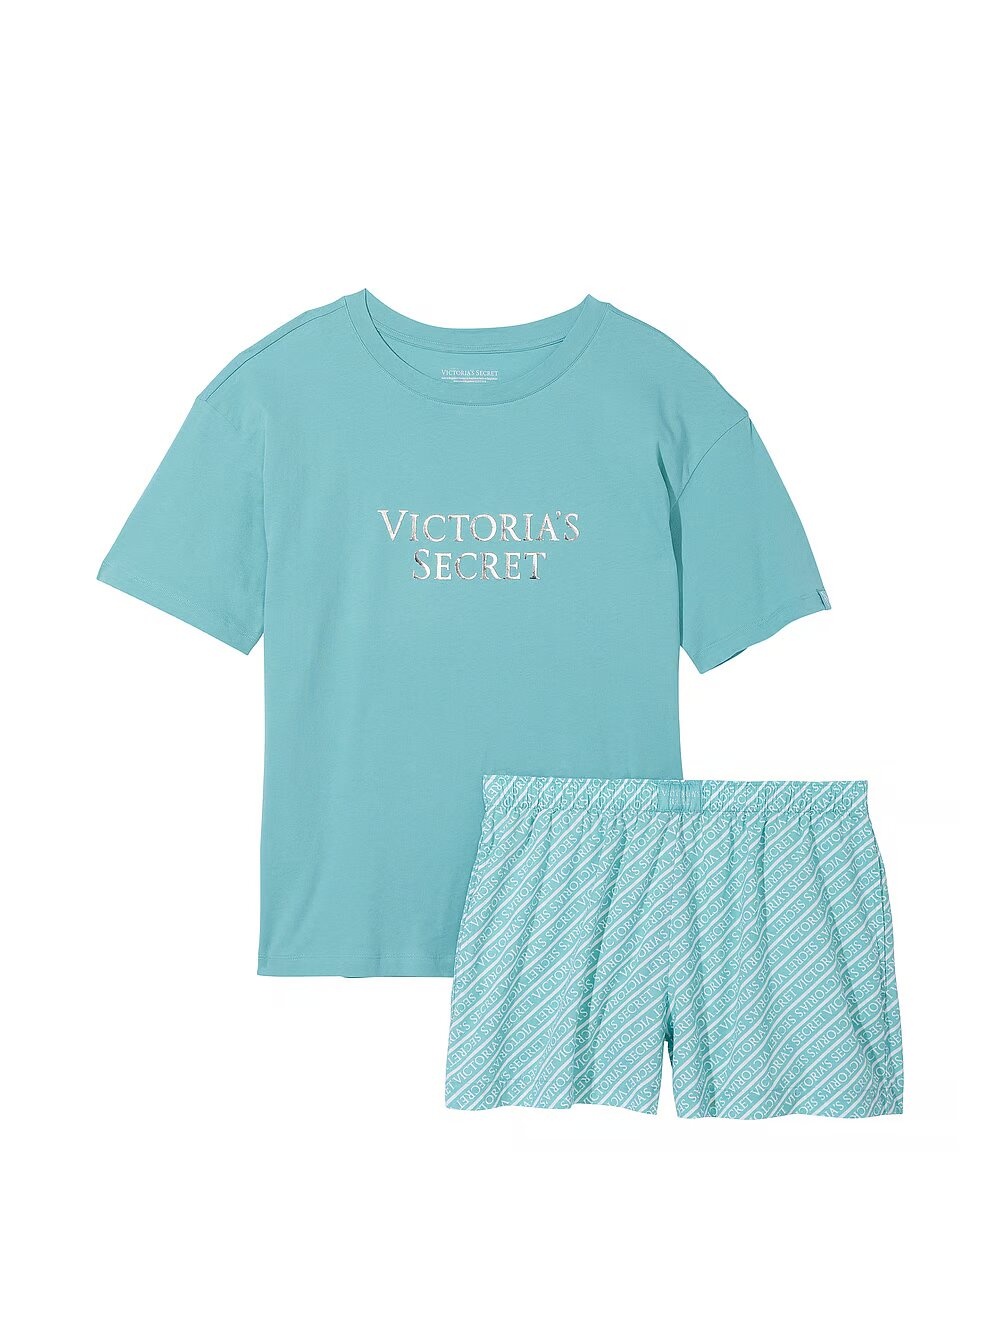 Пижама Victoria's Secret Cotton Short Tee-jama Set 332386QJP фото